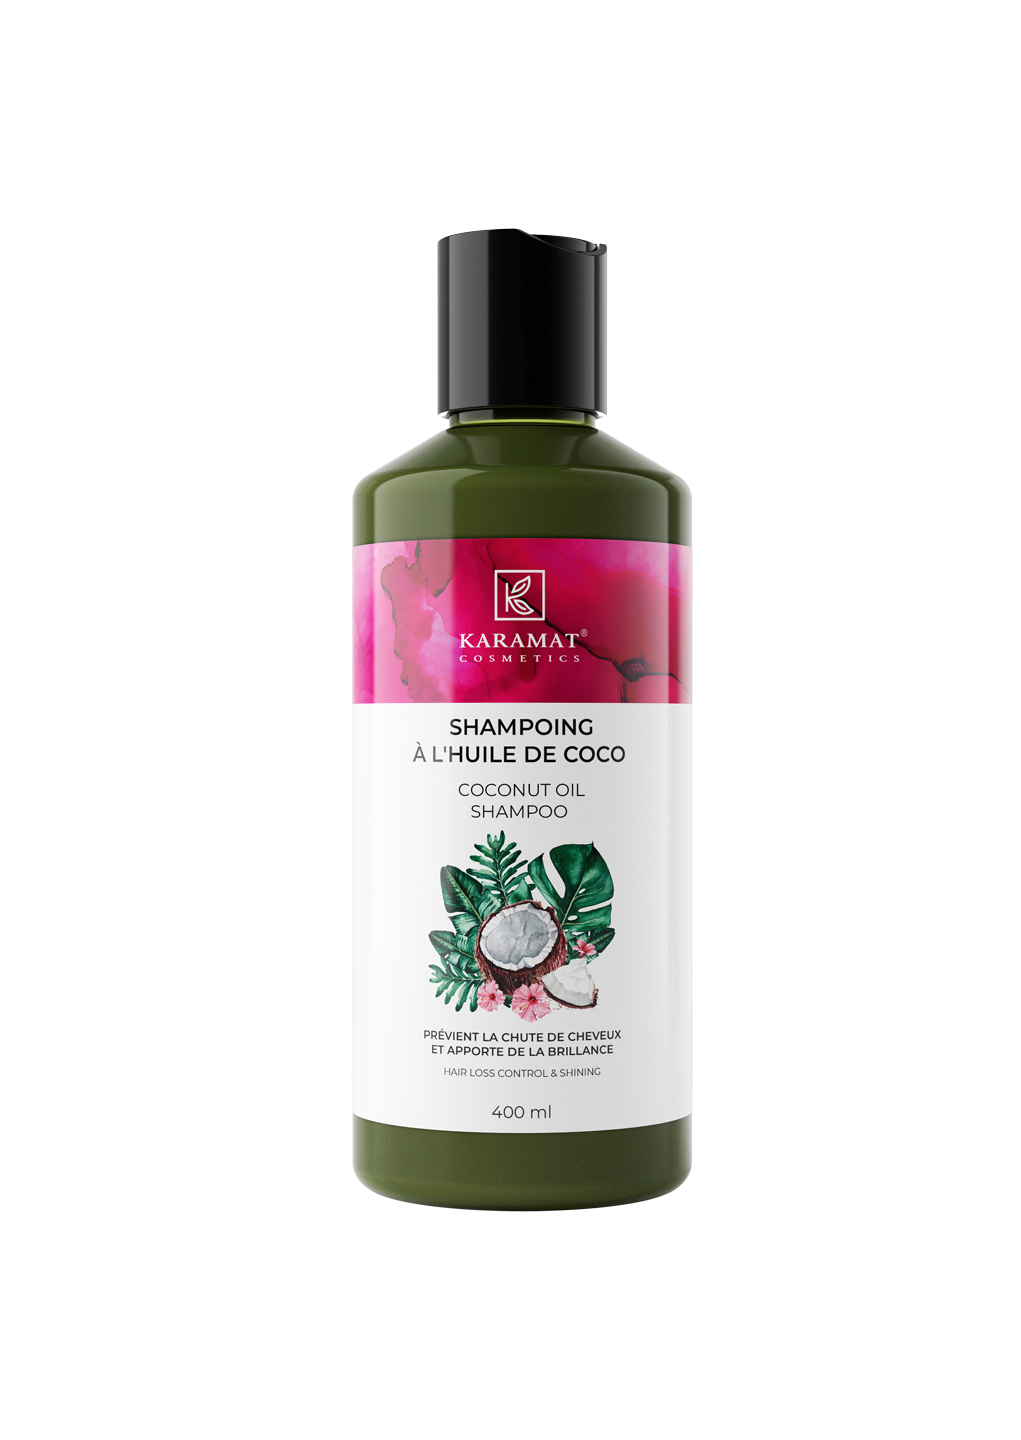 shampooing-a-l-huile-de-coco-karamat-cosmetics-400-ml-apporte-brillance-et-freine-la-chute-de-cheveux